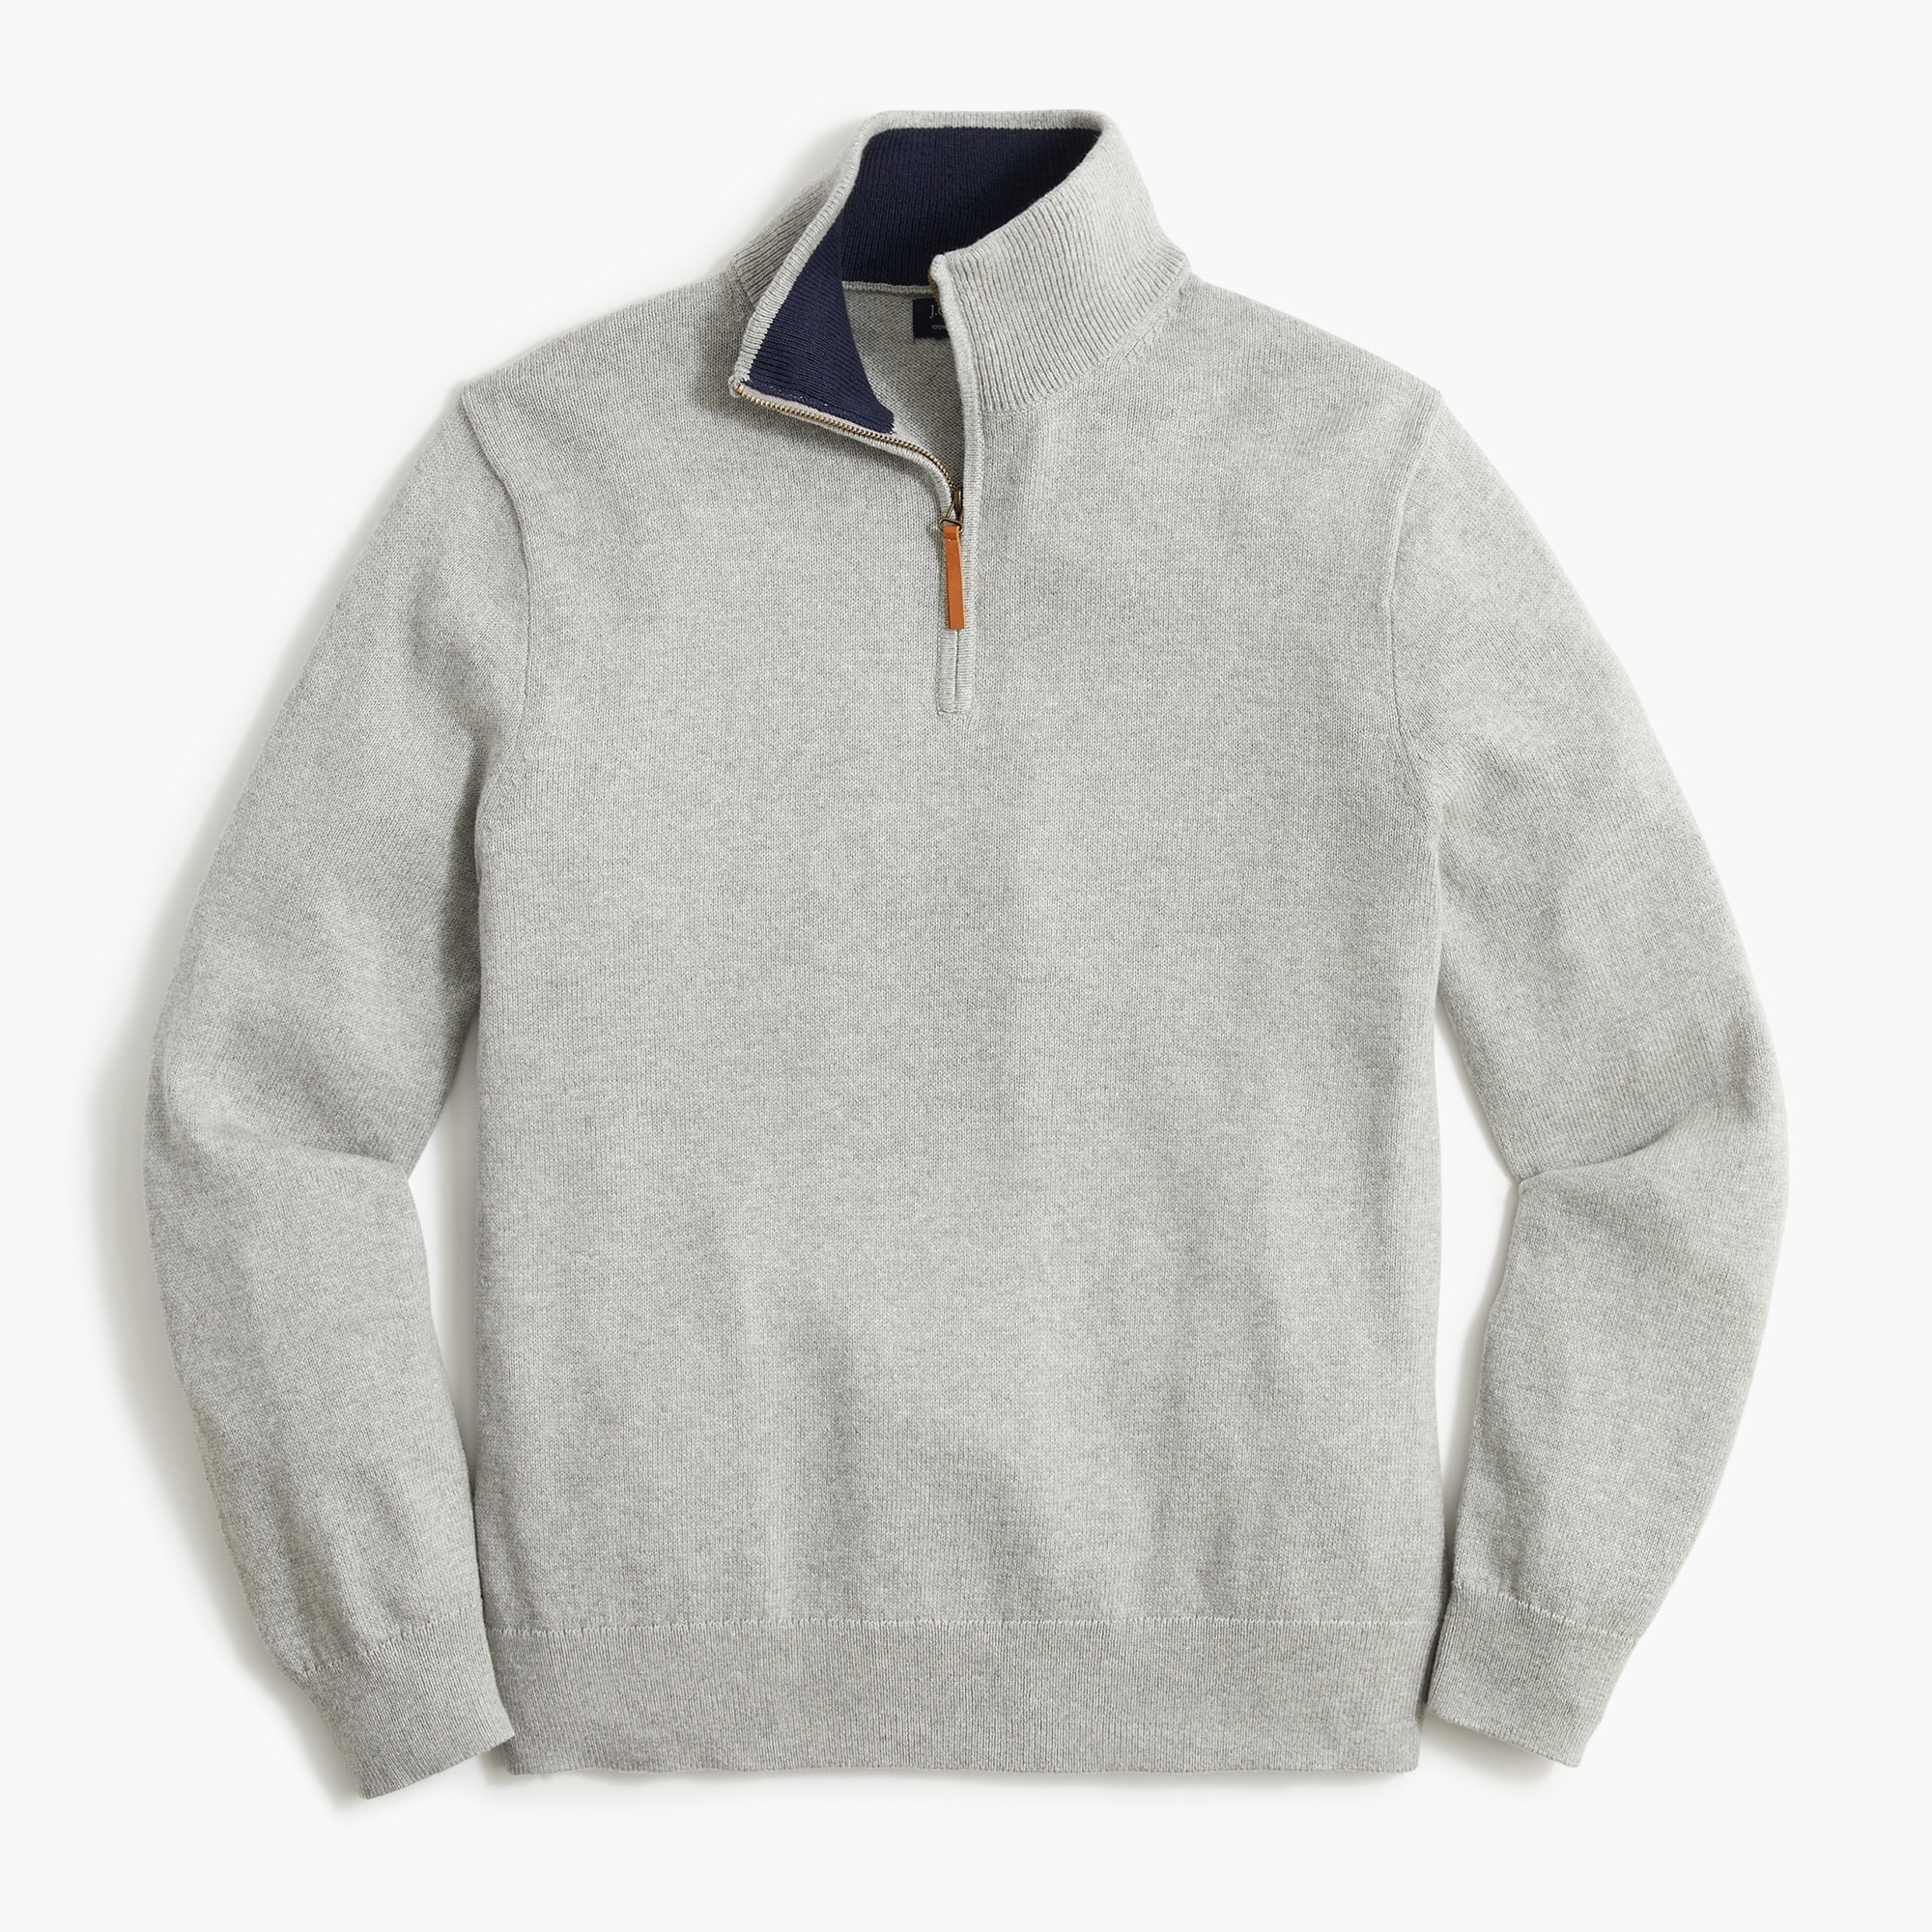  Cotton half-zip sweater